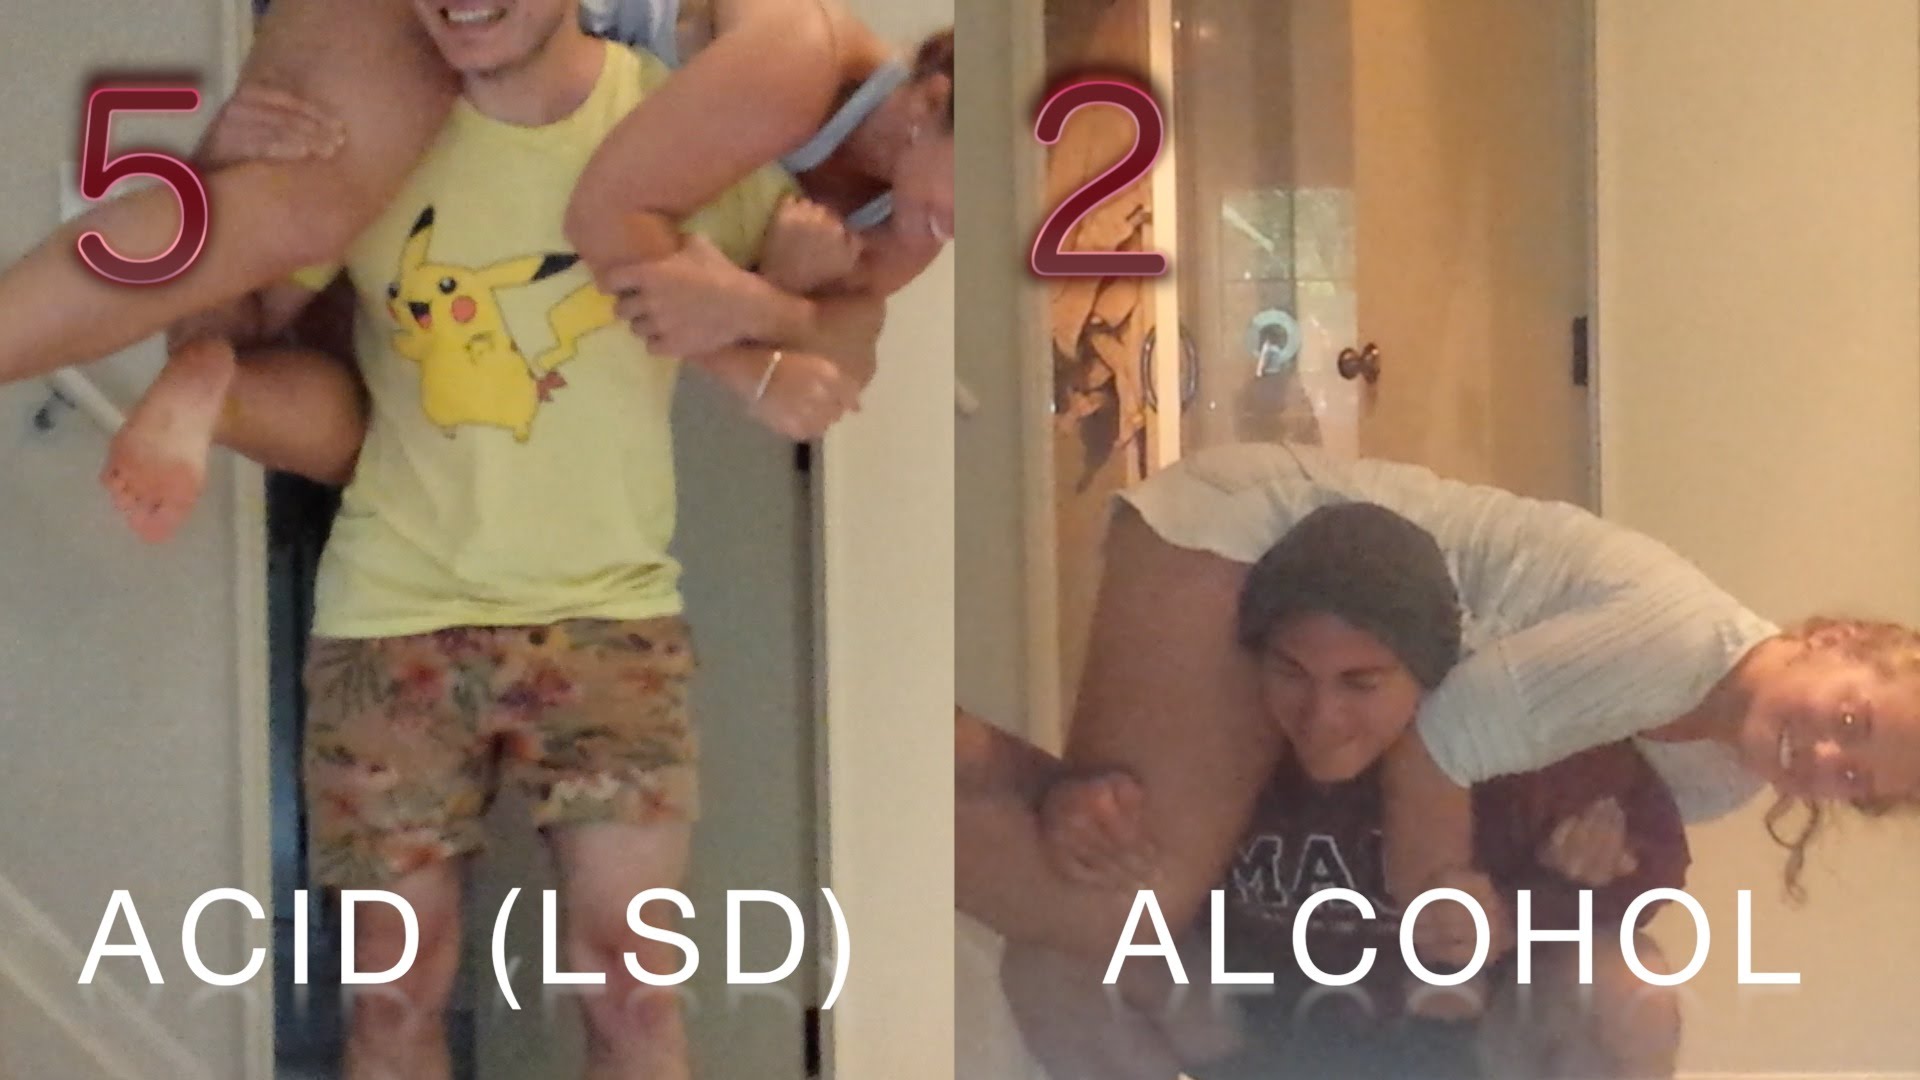 VIDEO: Neiesakām atkārtot! Dažādu uzdevumu veikšana esot alkohola un narkotisko vielu reibumā! (Alcohol VS Acid (LSD) Challenge)